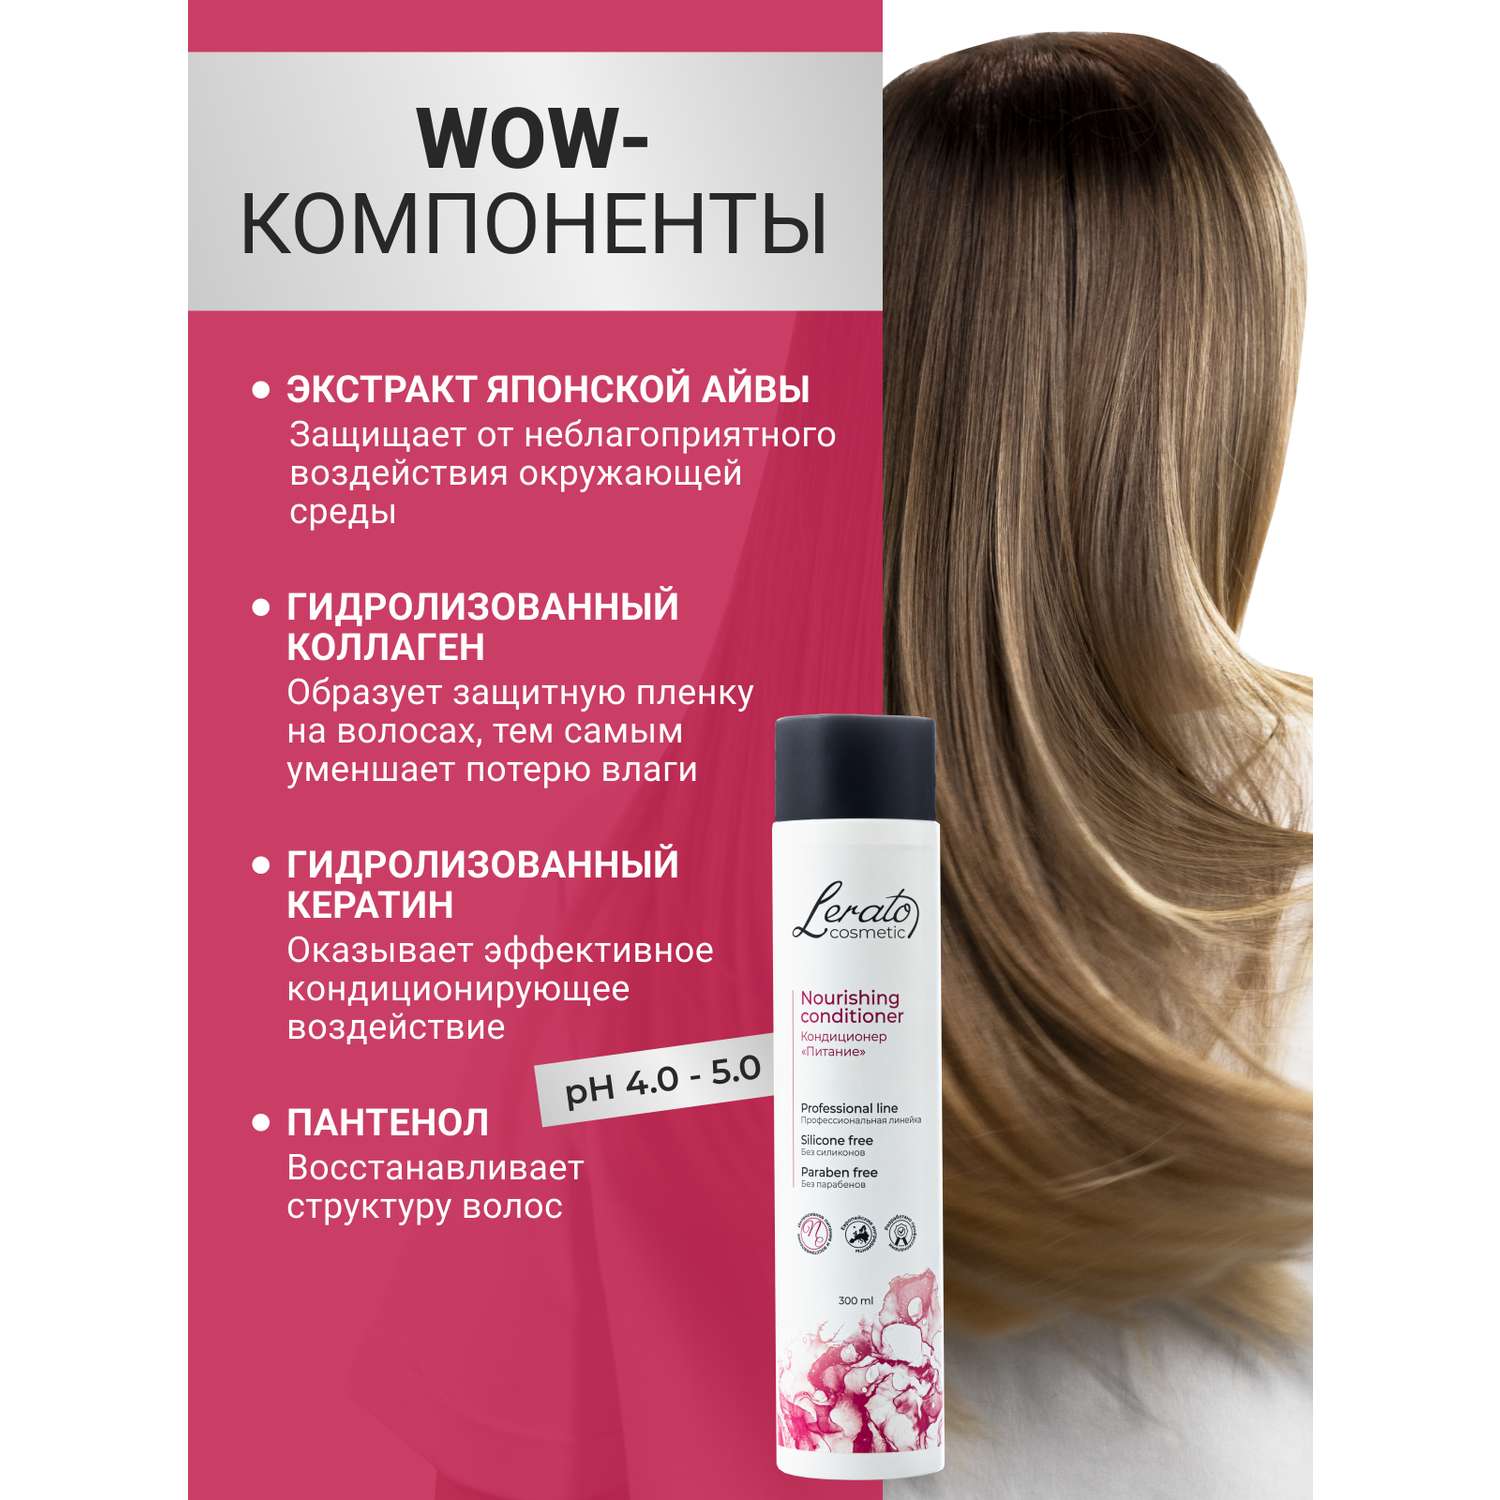 Кондиционер Lerato Cosmetic Питательный для сухих поврежденных и окрашенных волос 300 мл - фото 5